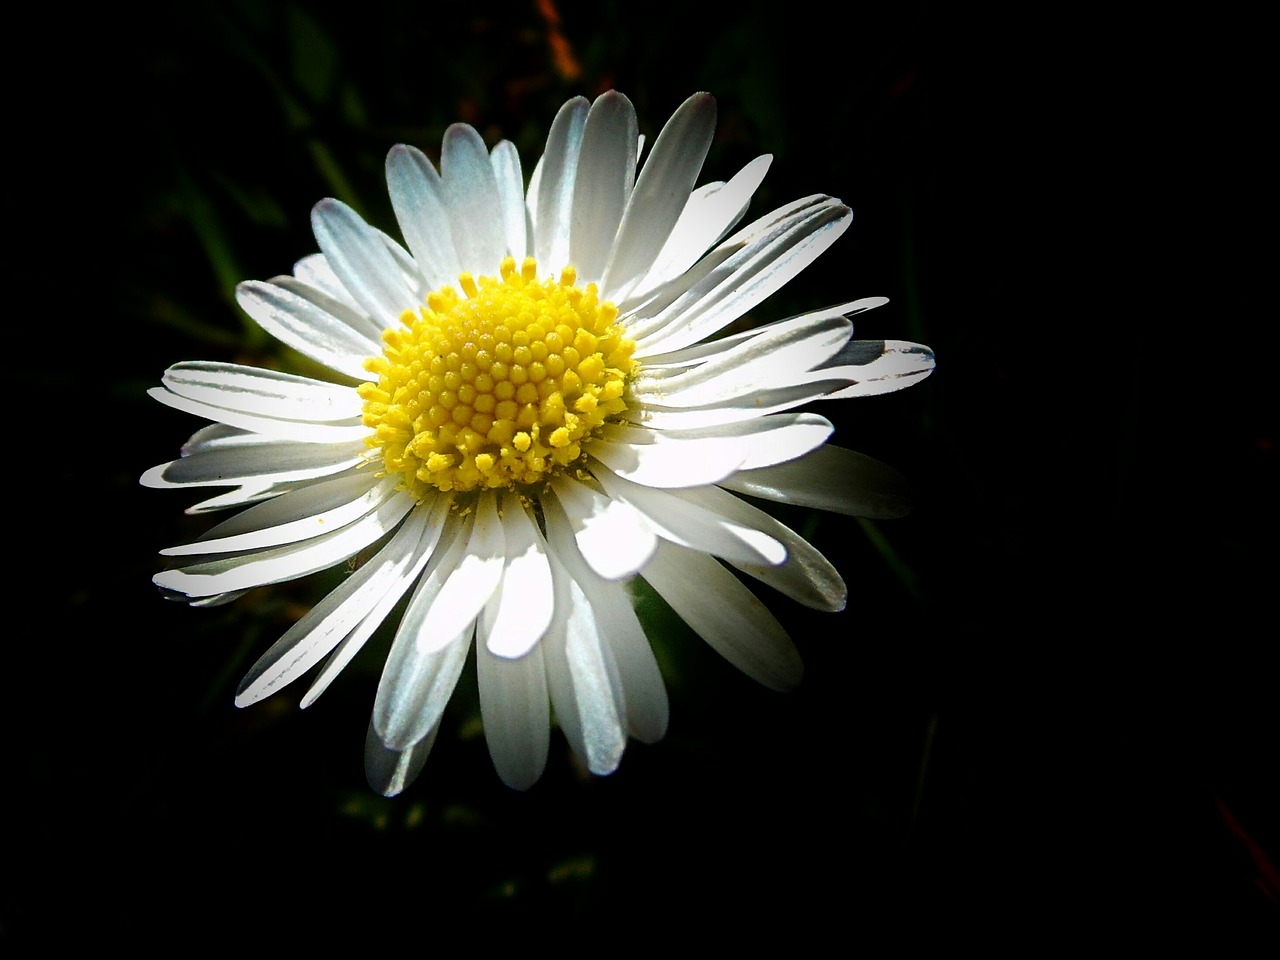 daisy tender small free photo